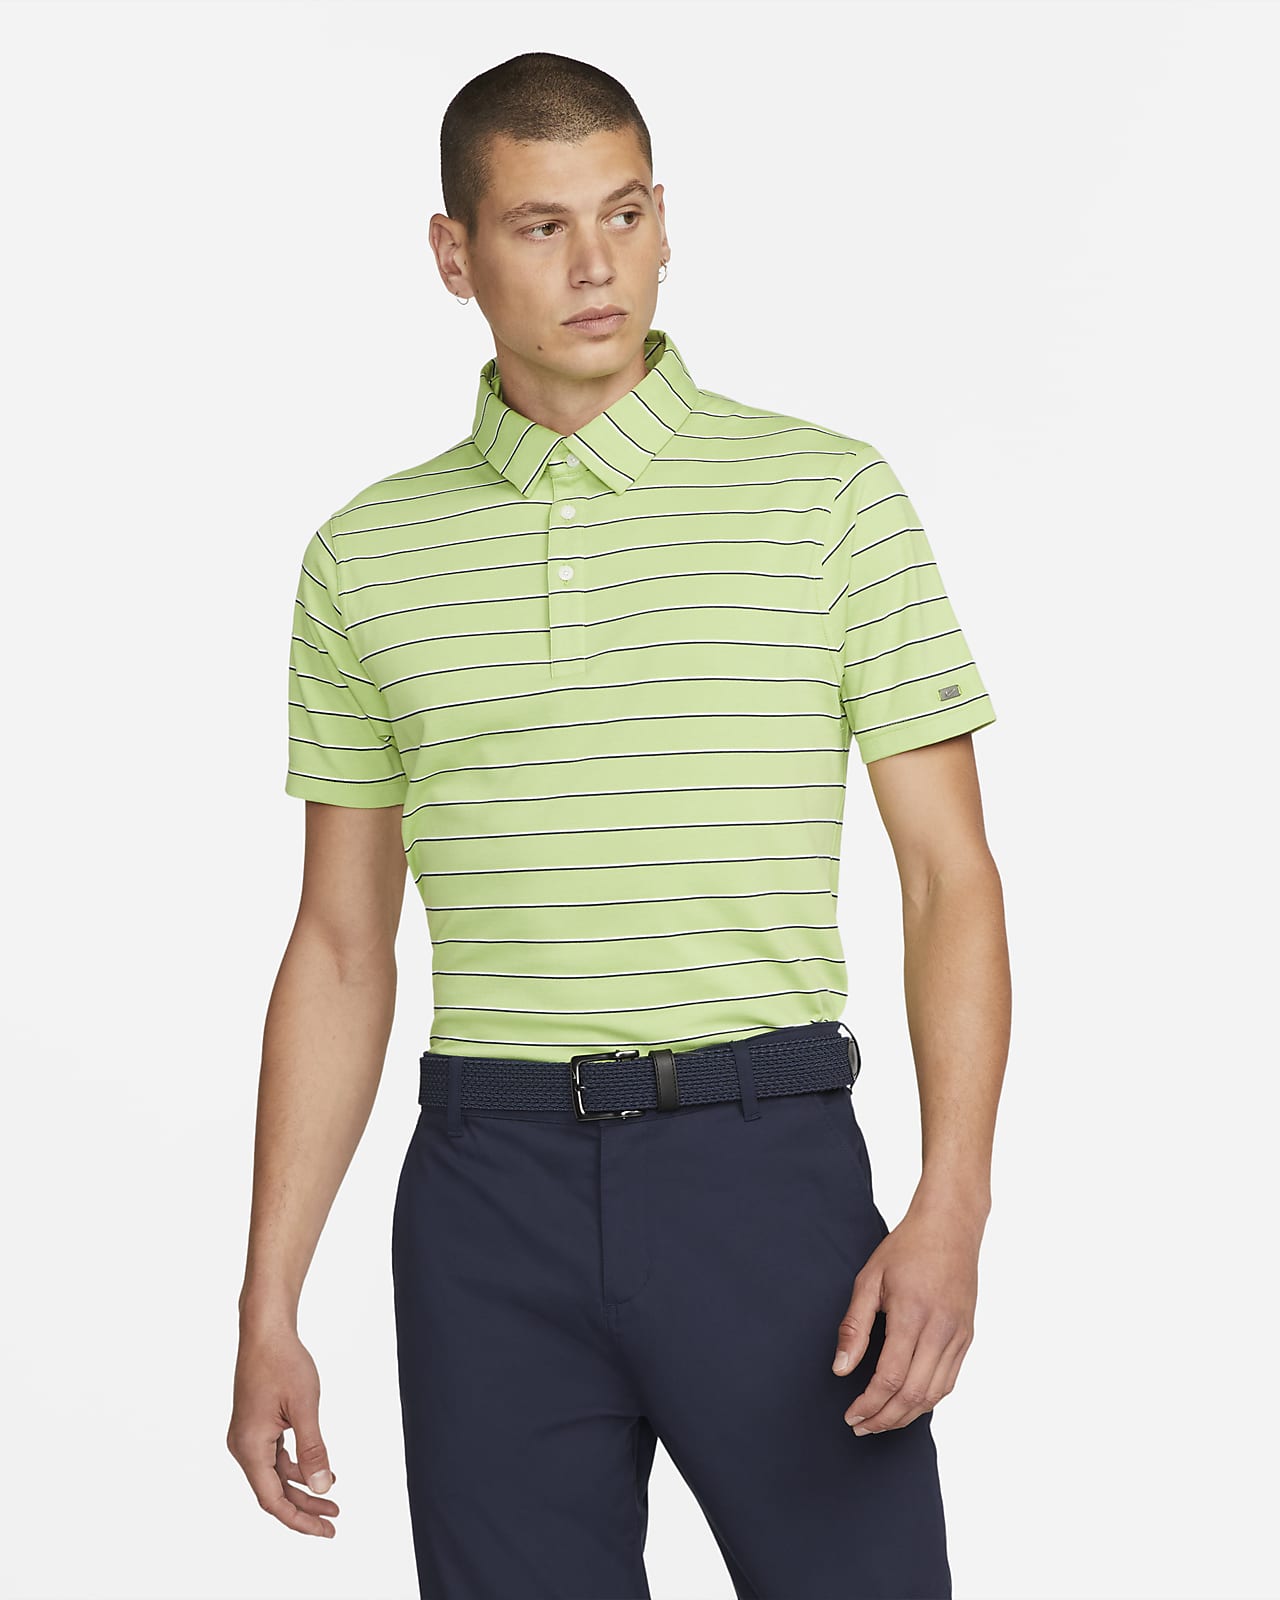 Pánská golfová polokošile Nike Dri-FIT Player s proužky